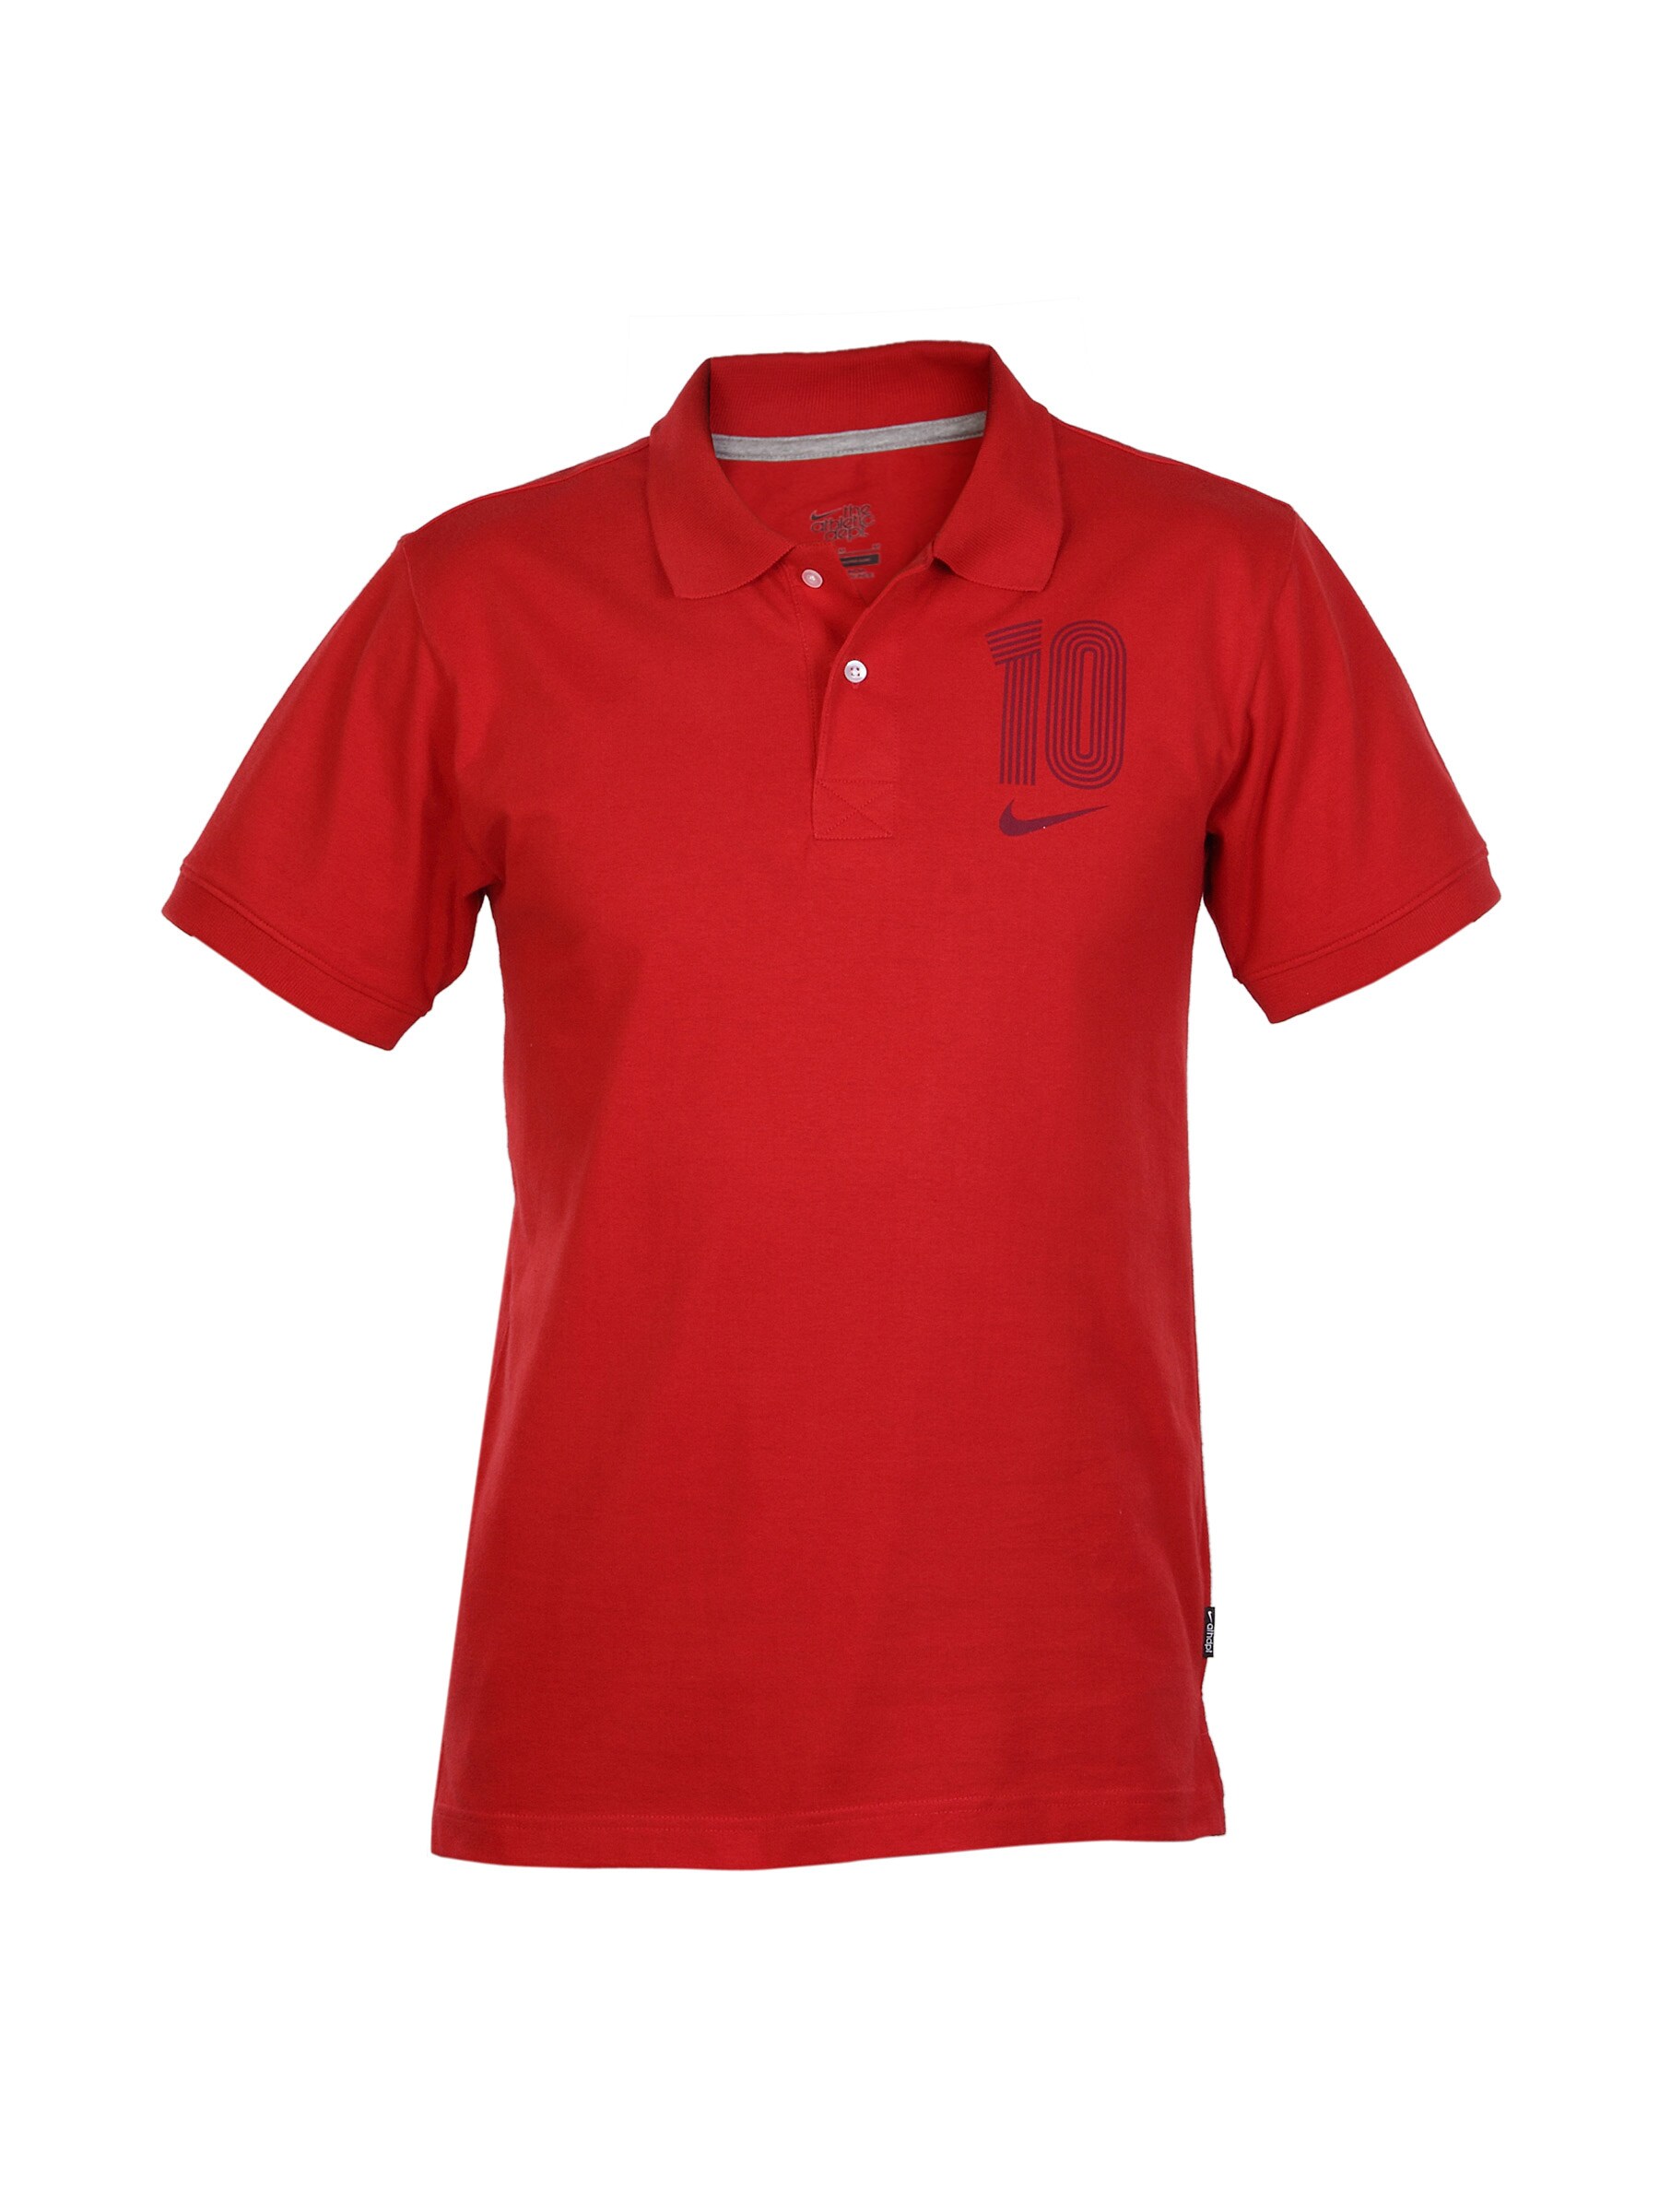 Nike Men Red Polo T-shirt